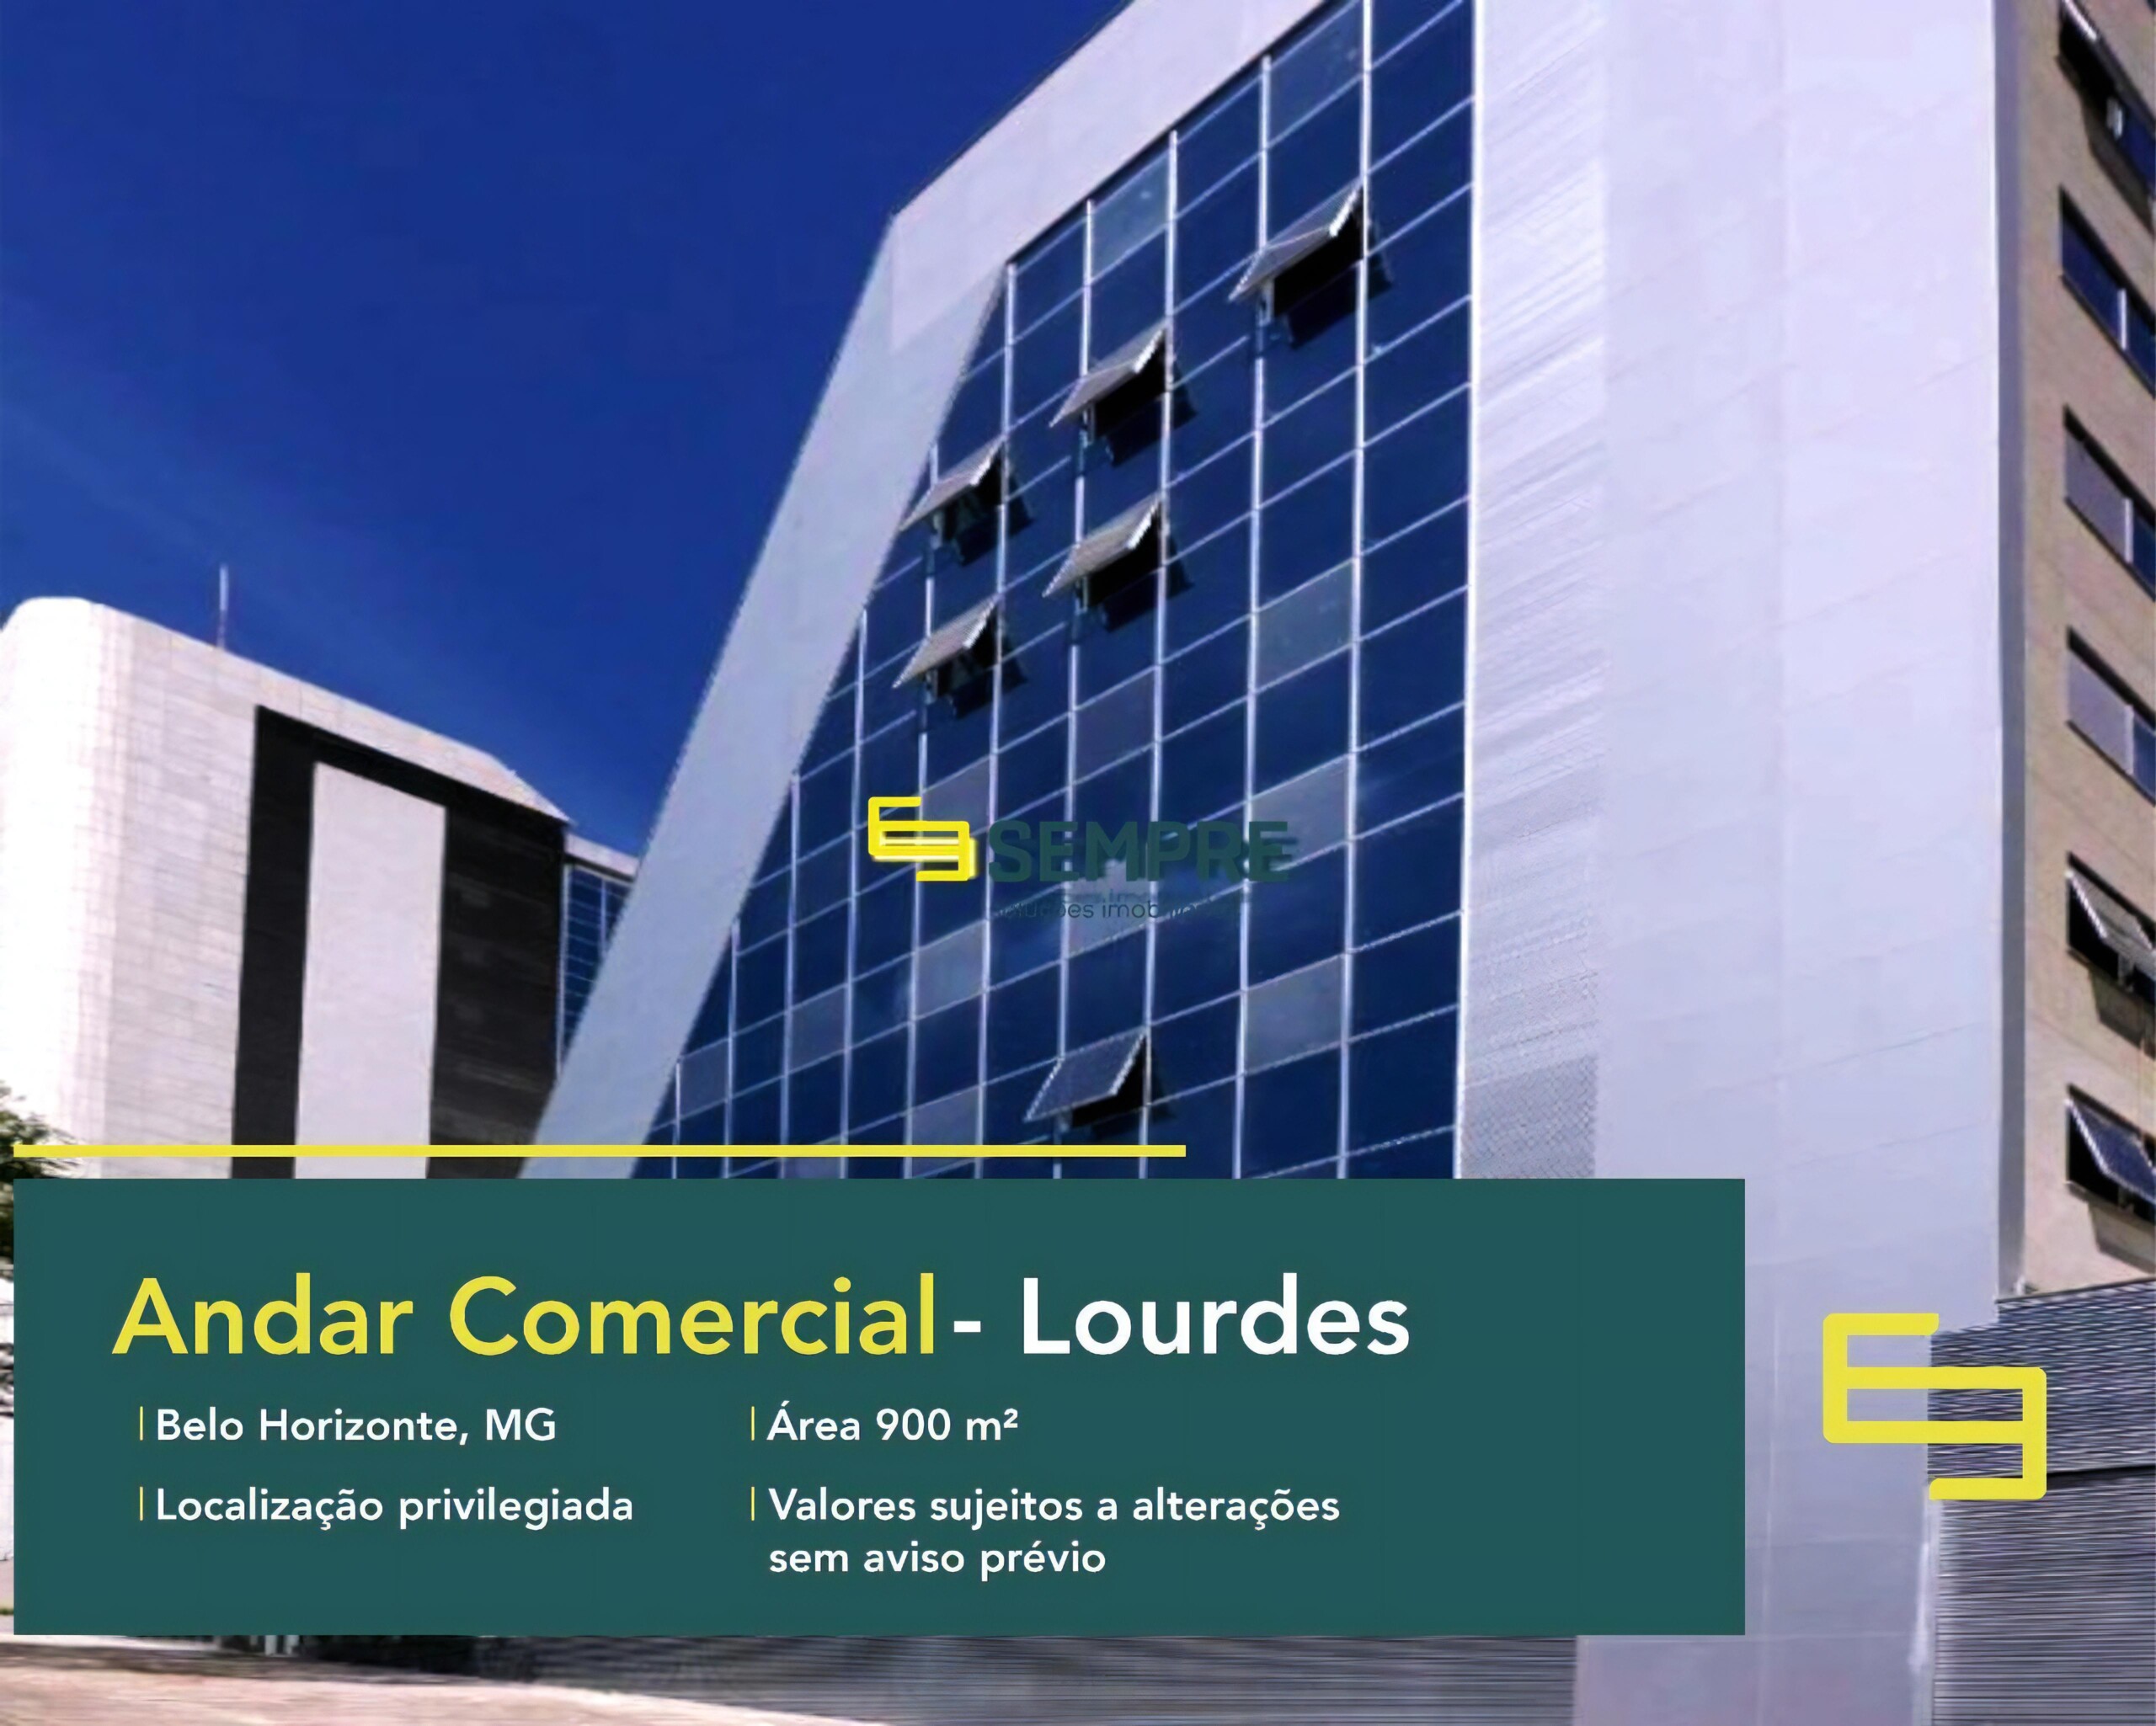 Andar corrido no Lourdes para alugar em Belo Horizonte, excelente localização. O estabelecimento comercial conta com área de 900 m².